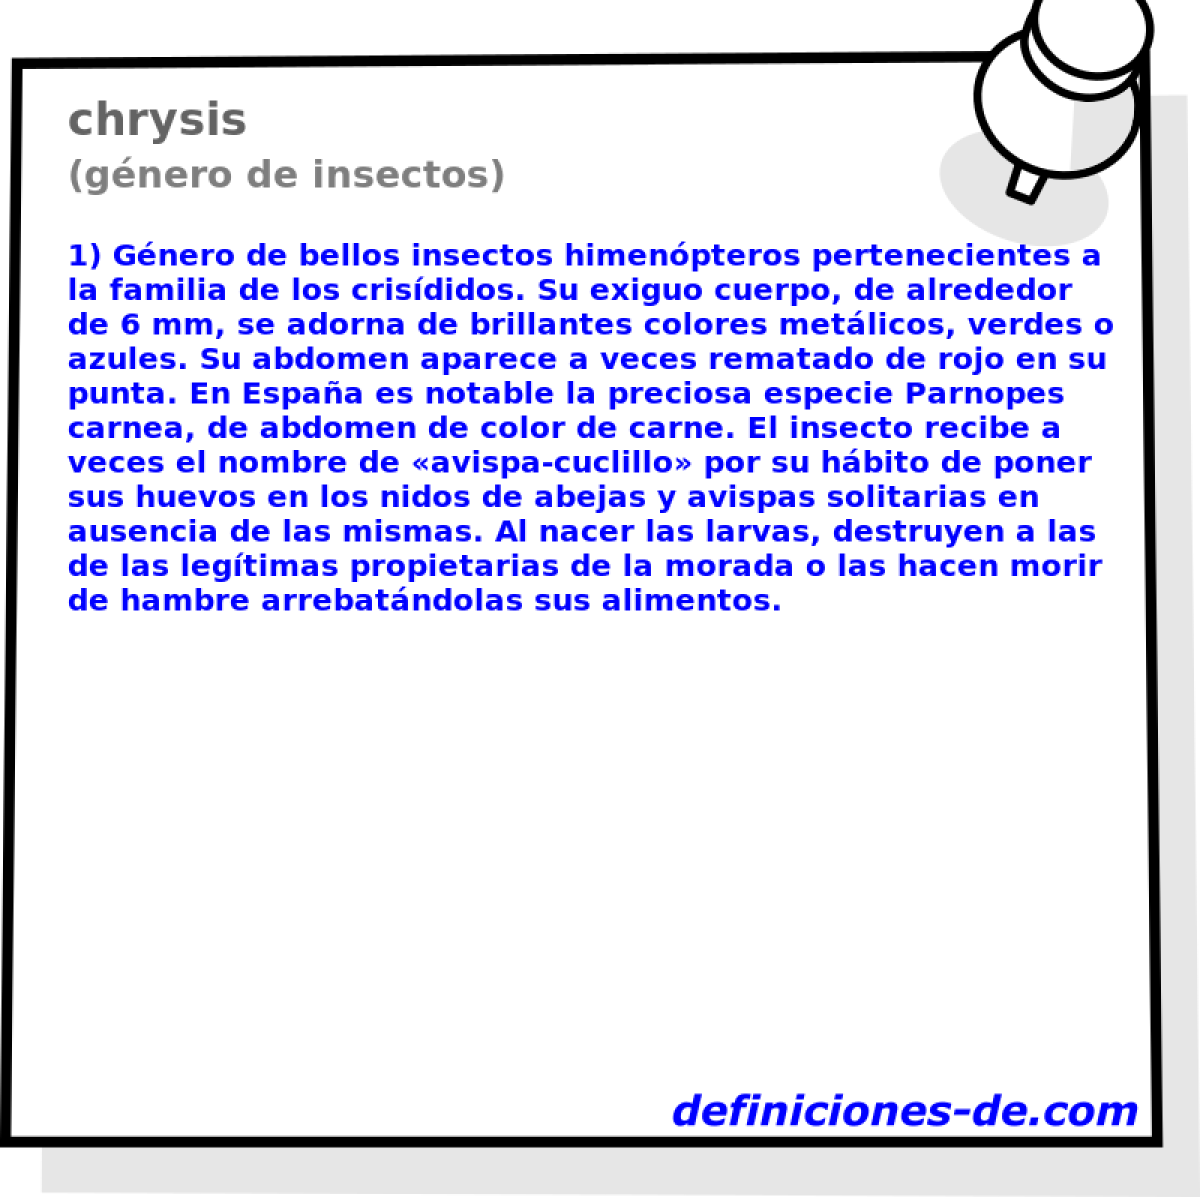 chrysis (gnero de insectos)